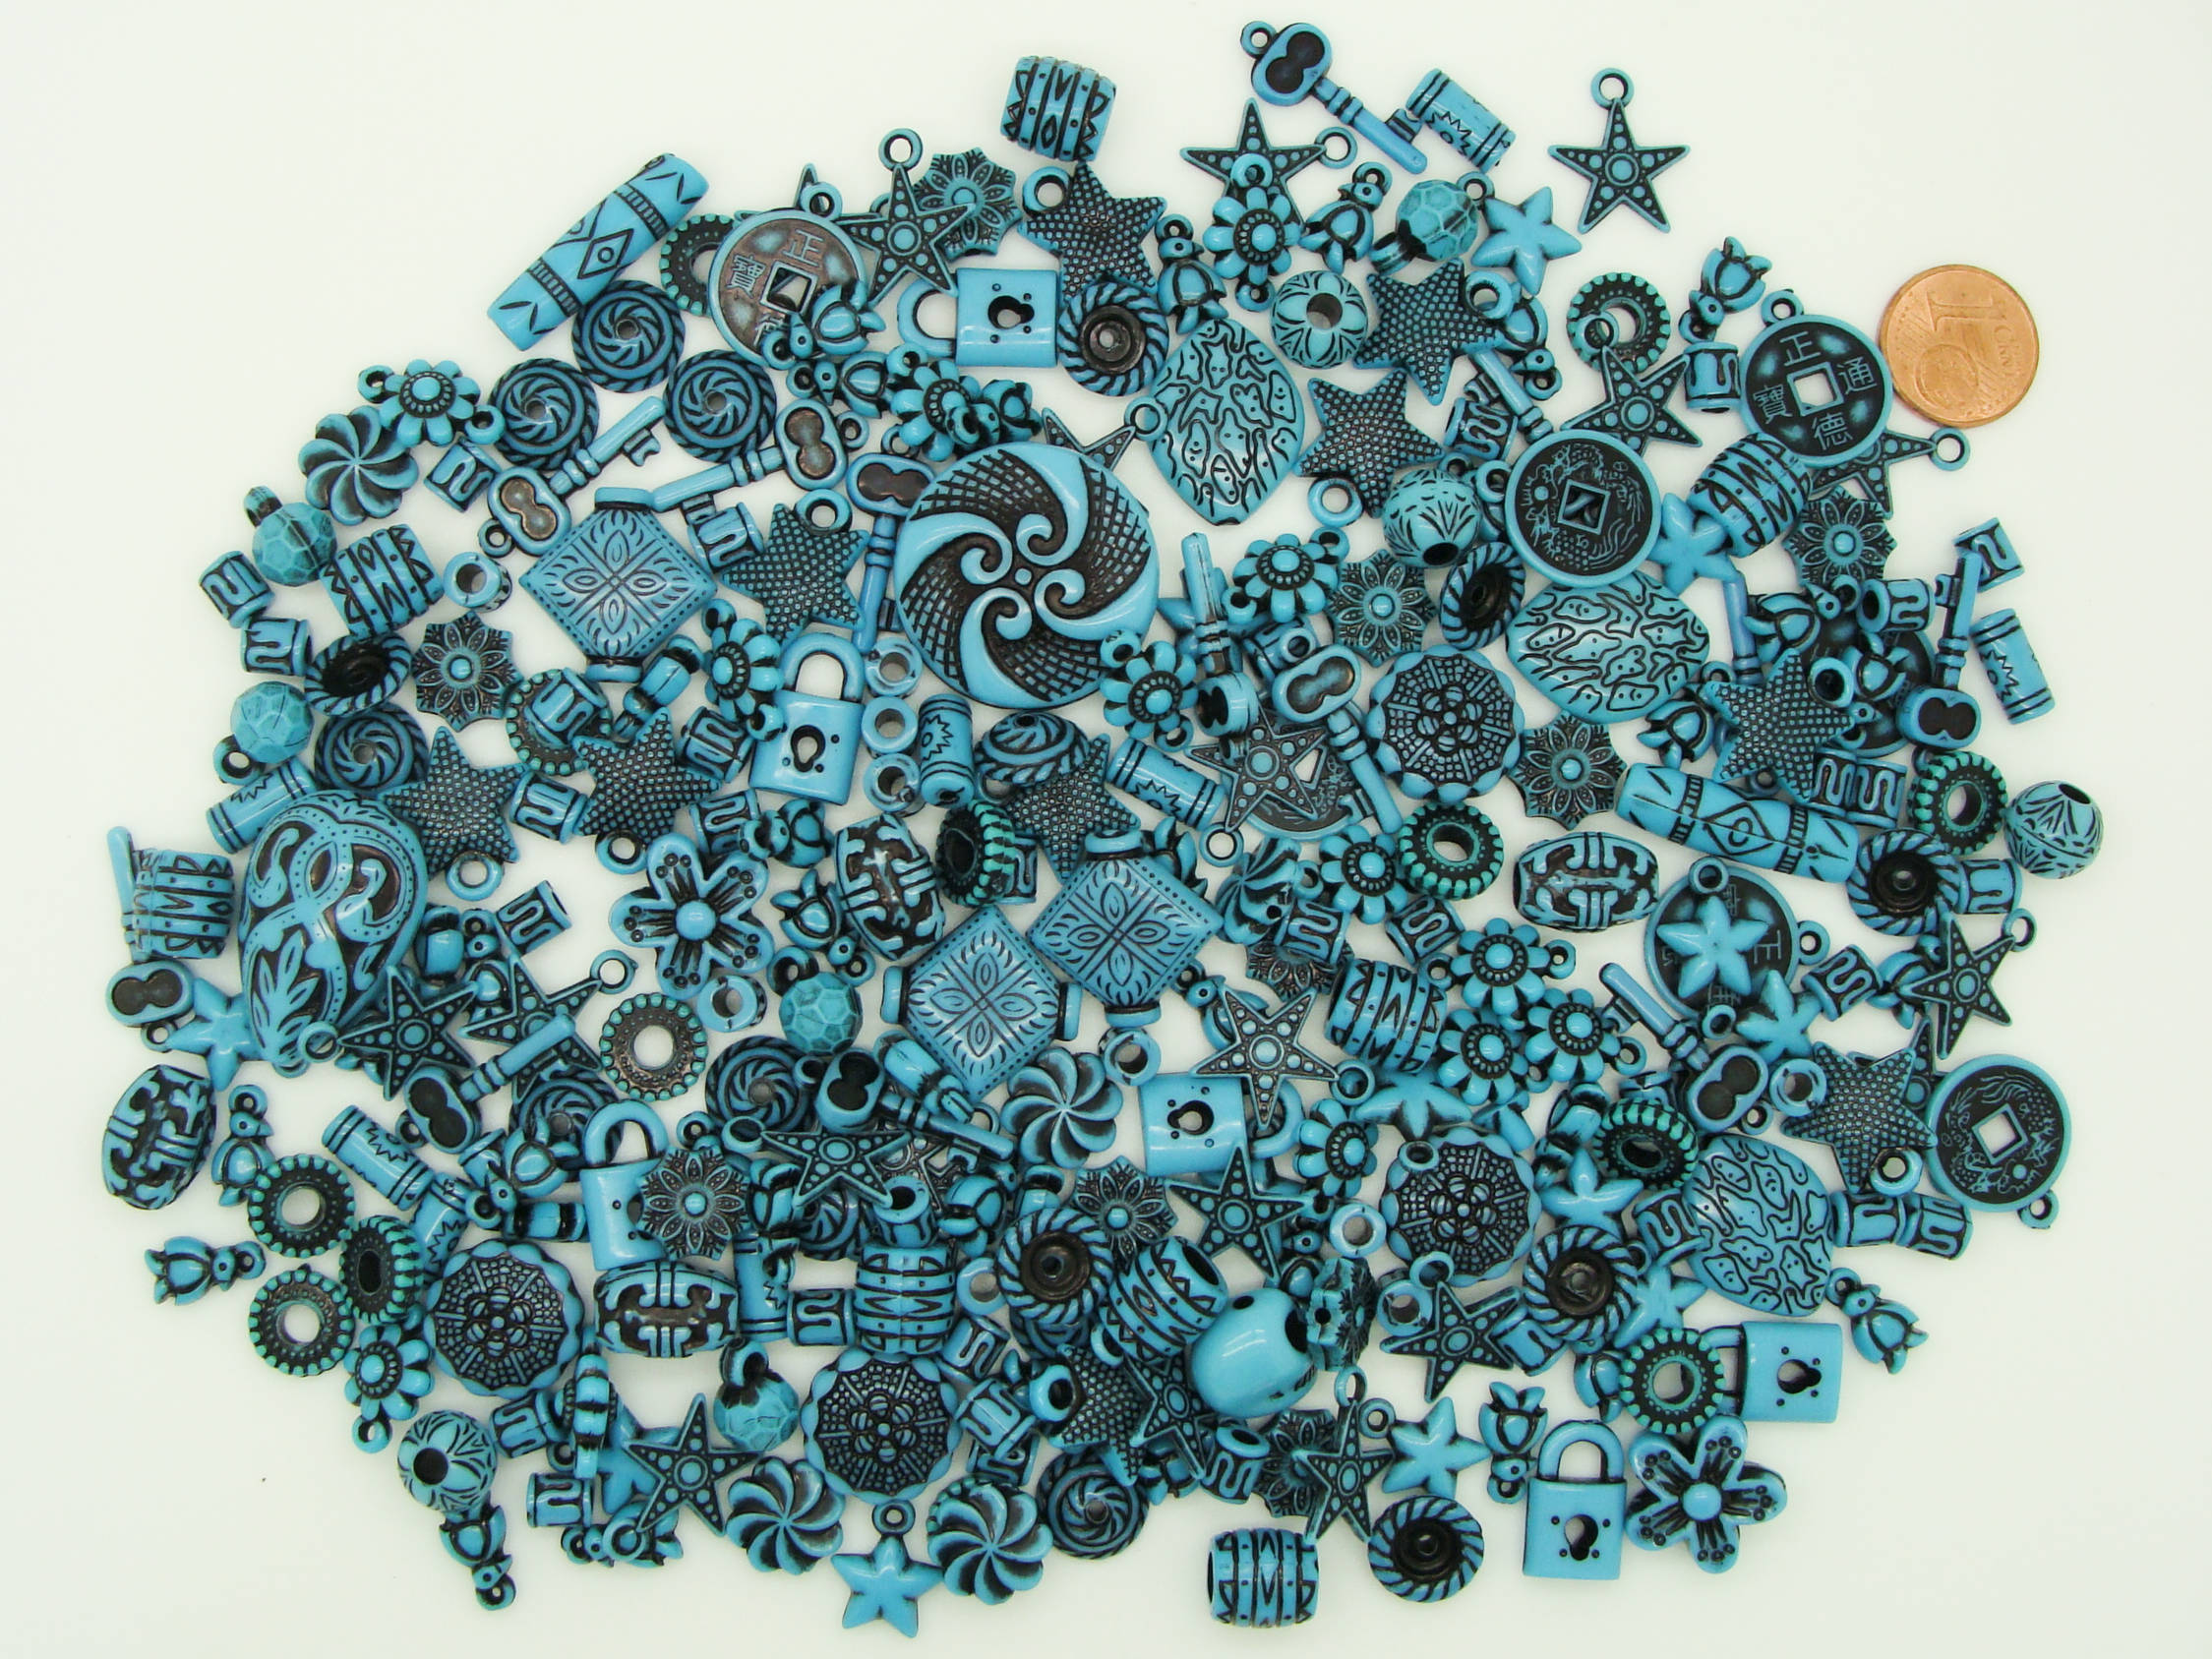 acry-75g-turquoiqe-fonce perle bleu acrylique marbre